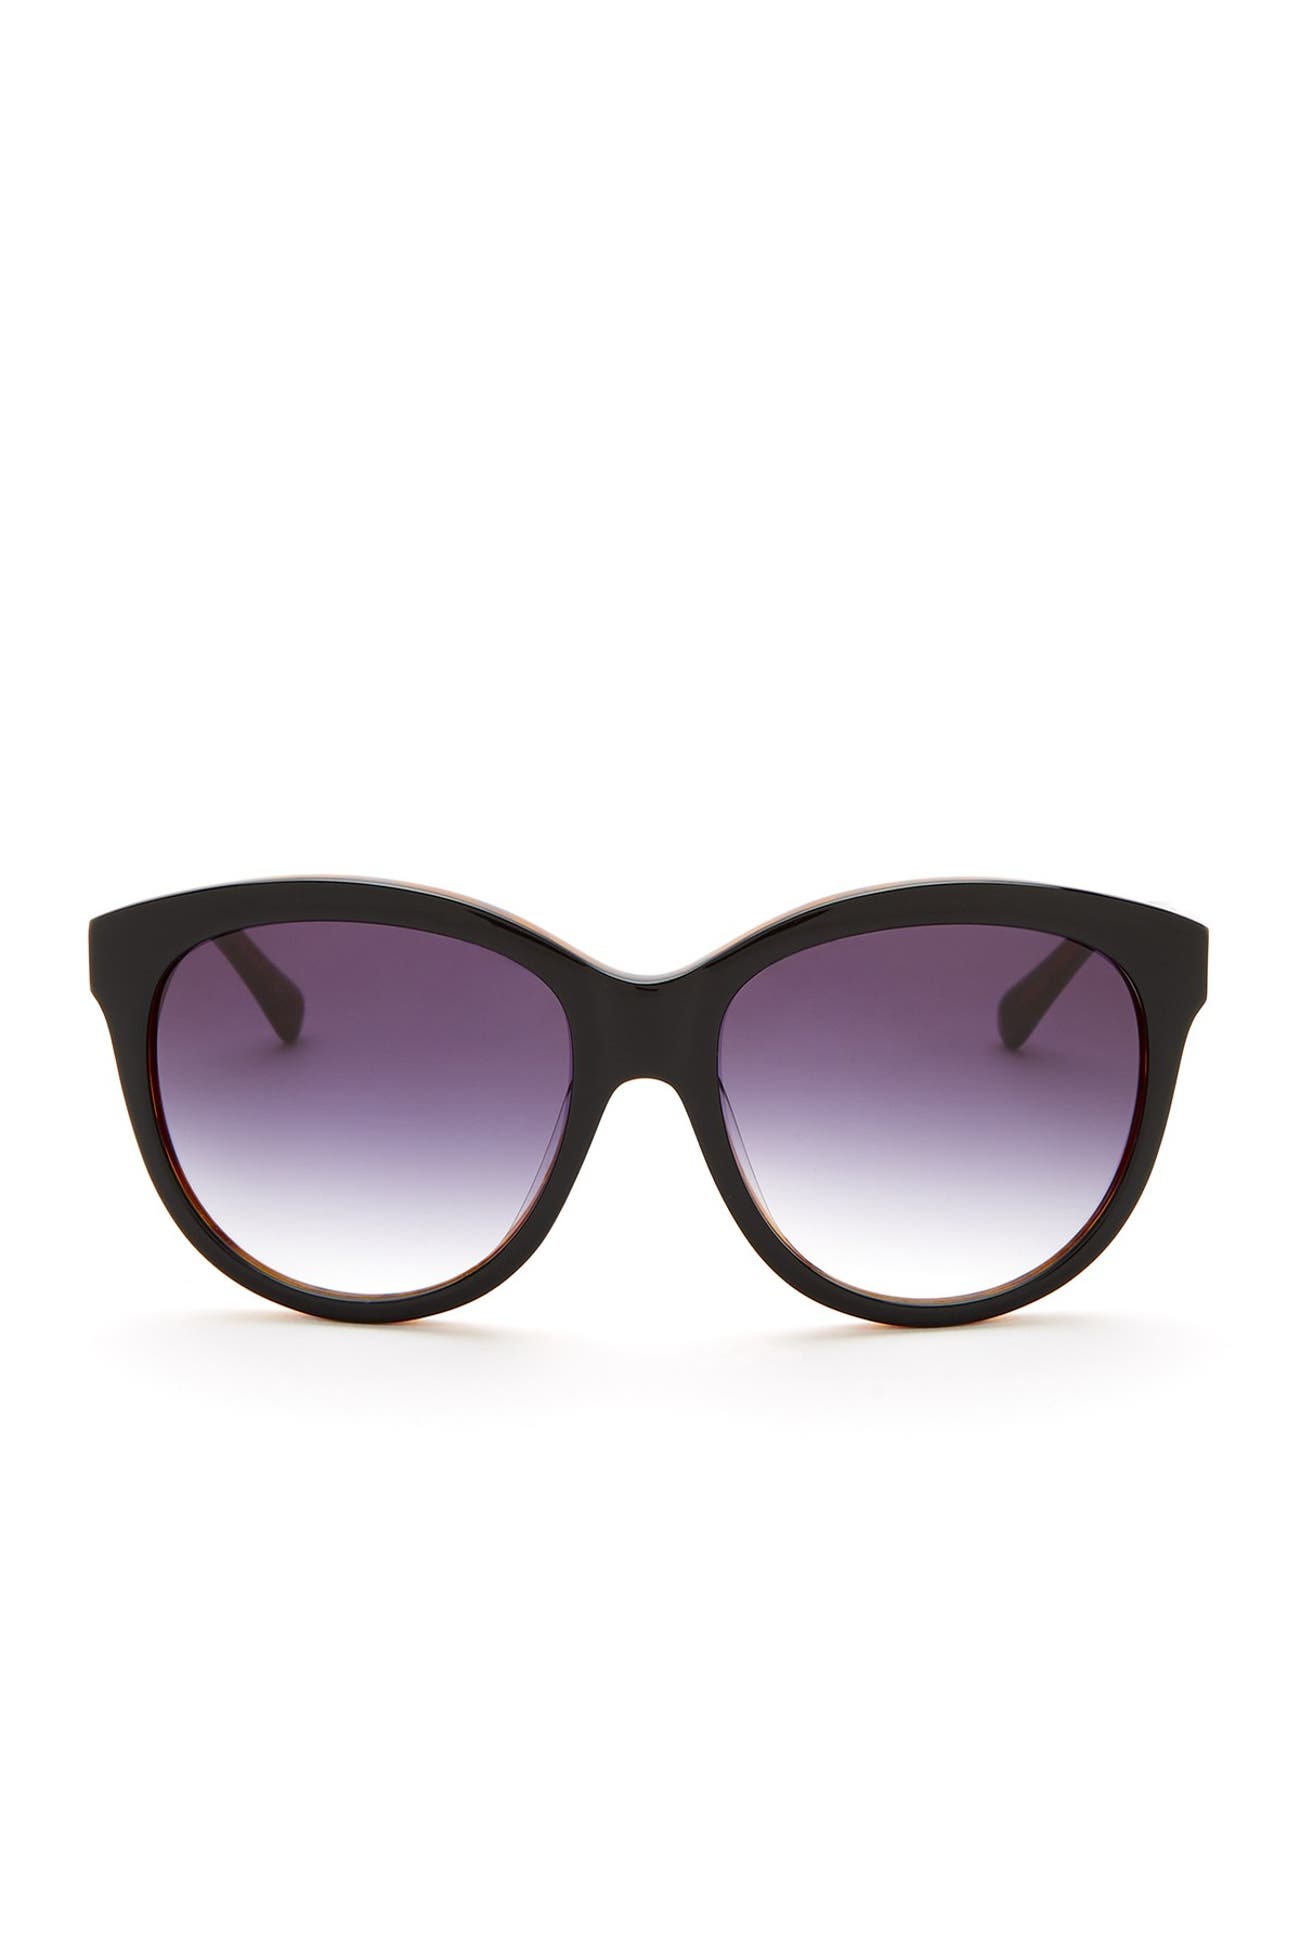 Elie Tahari | 55mm Wide Cat Eye Sunglasses | Nordstrom Rack